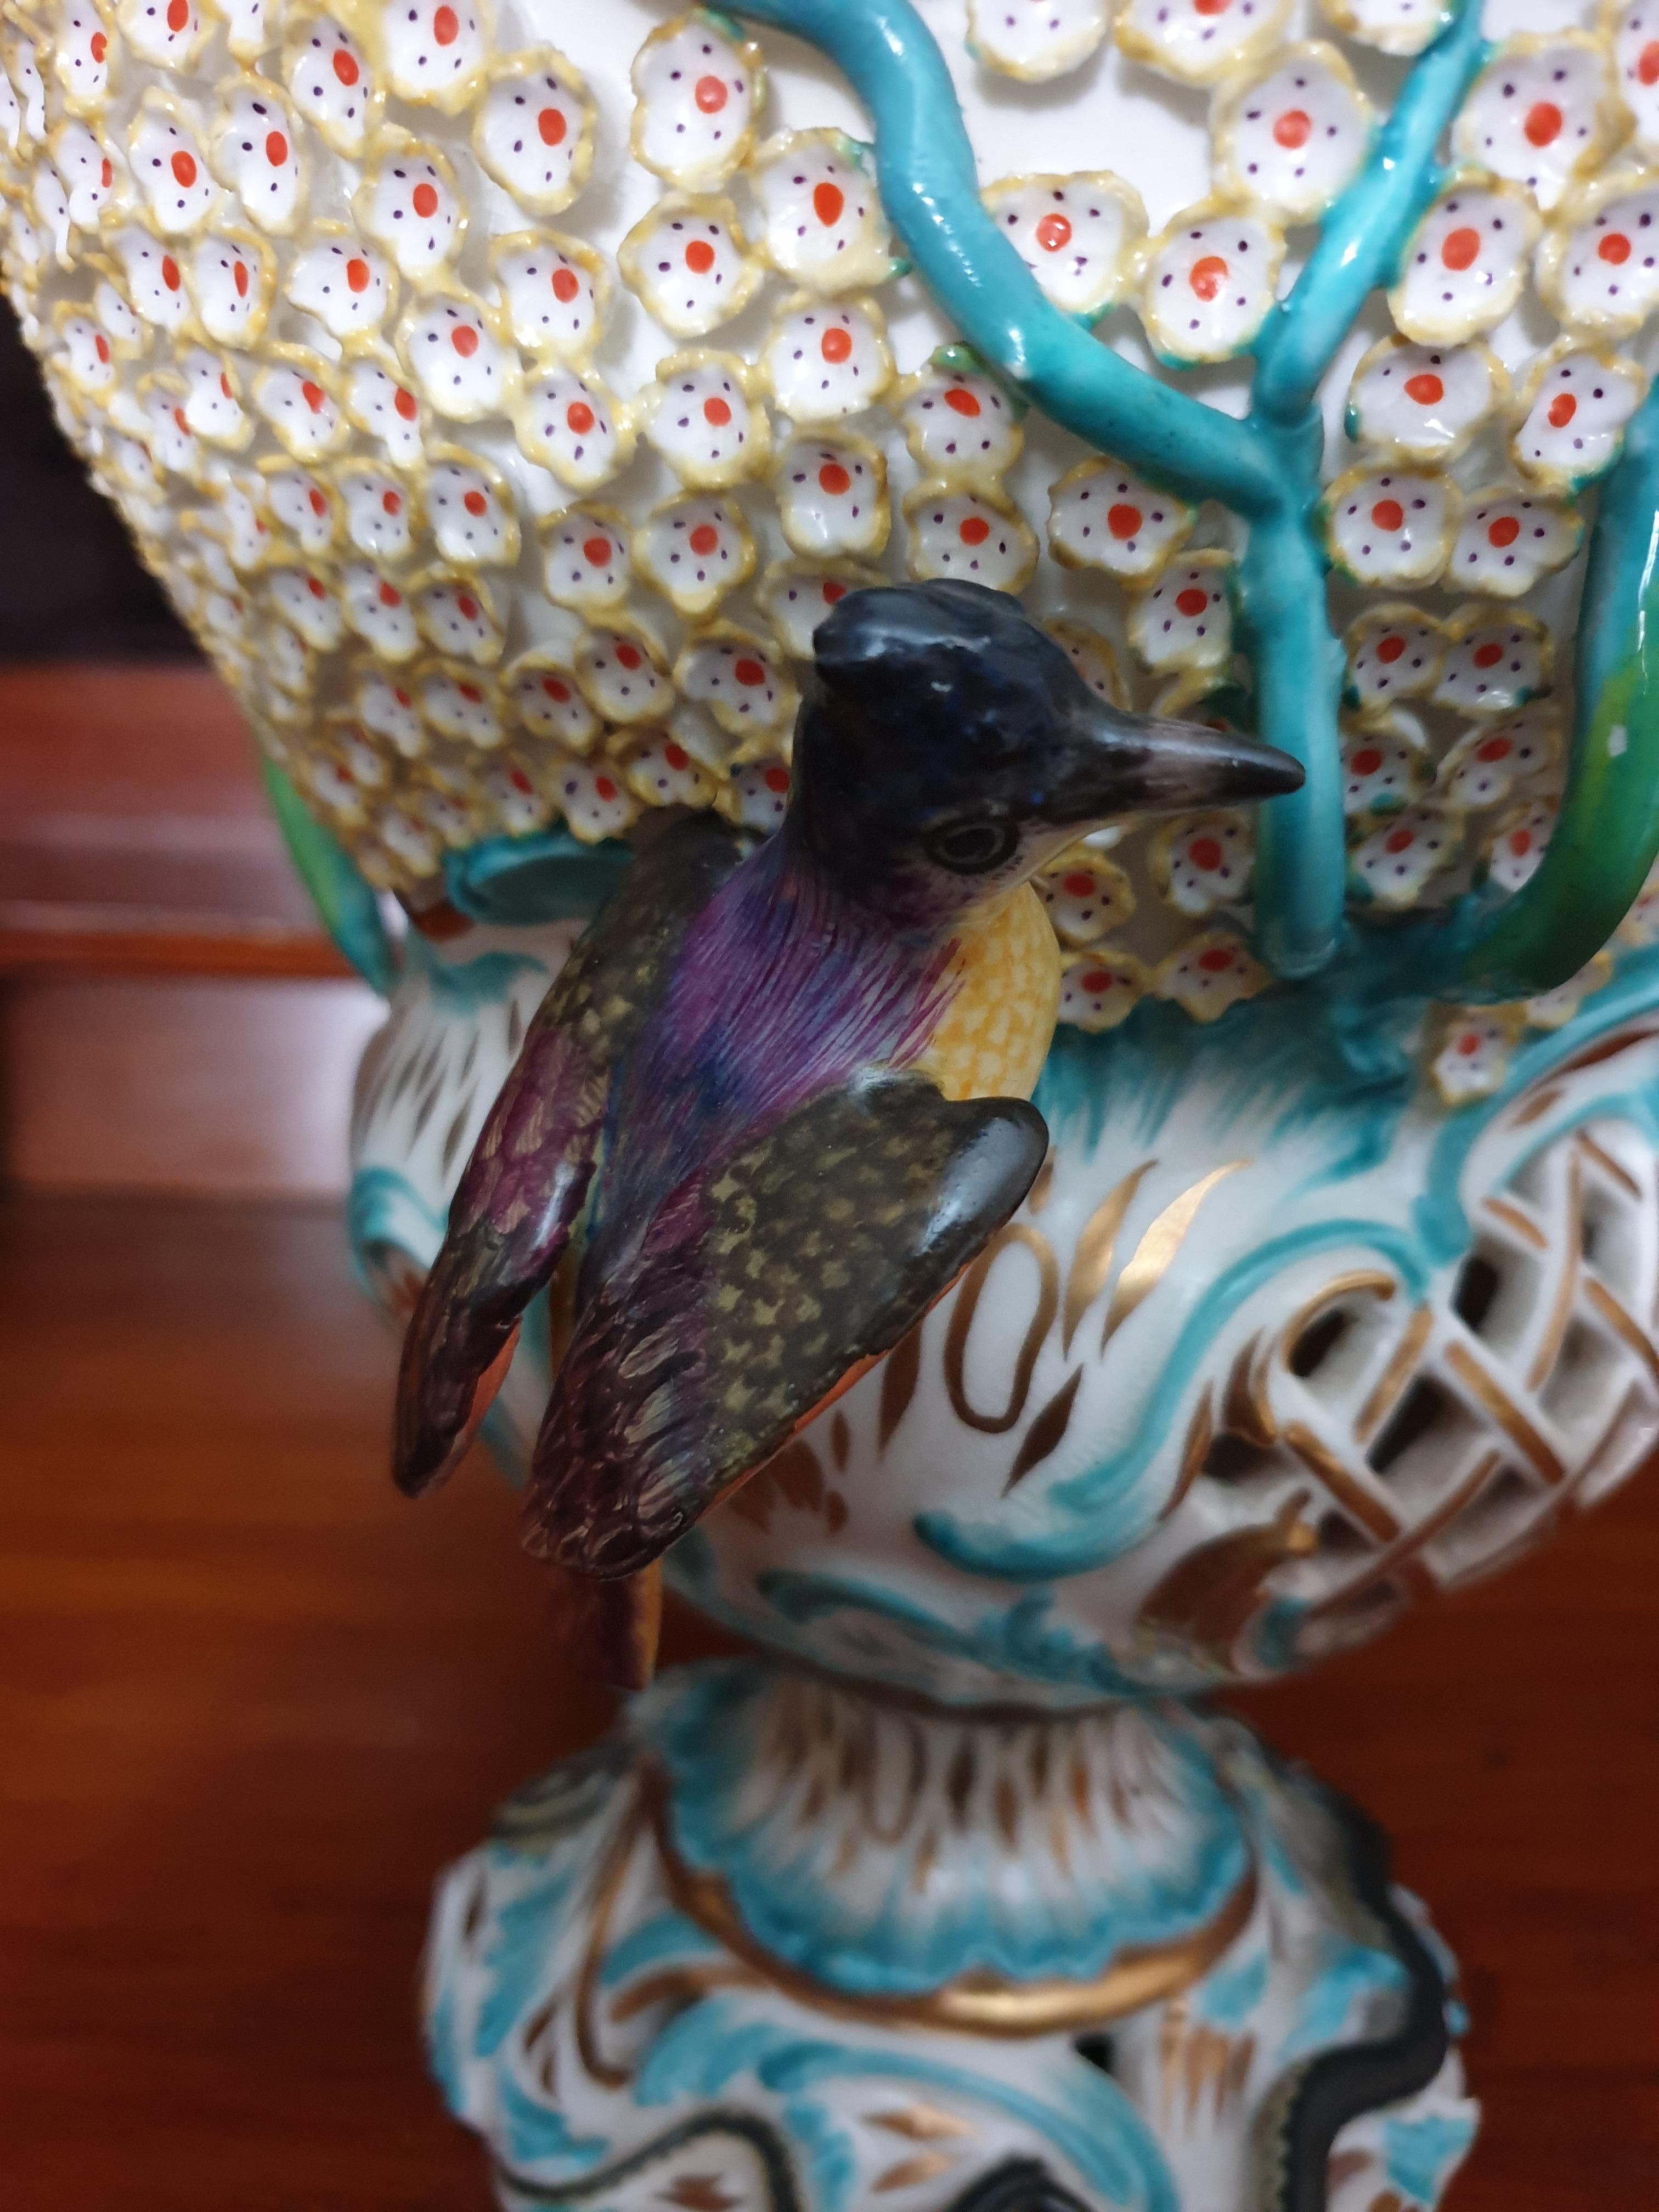 Coalport Turquoise Schneeballen Reticulated Encrusted Bird Exhibition Vase  For Sale 2